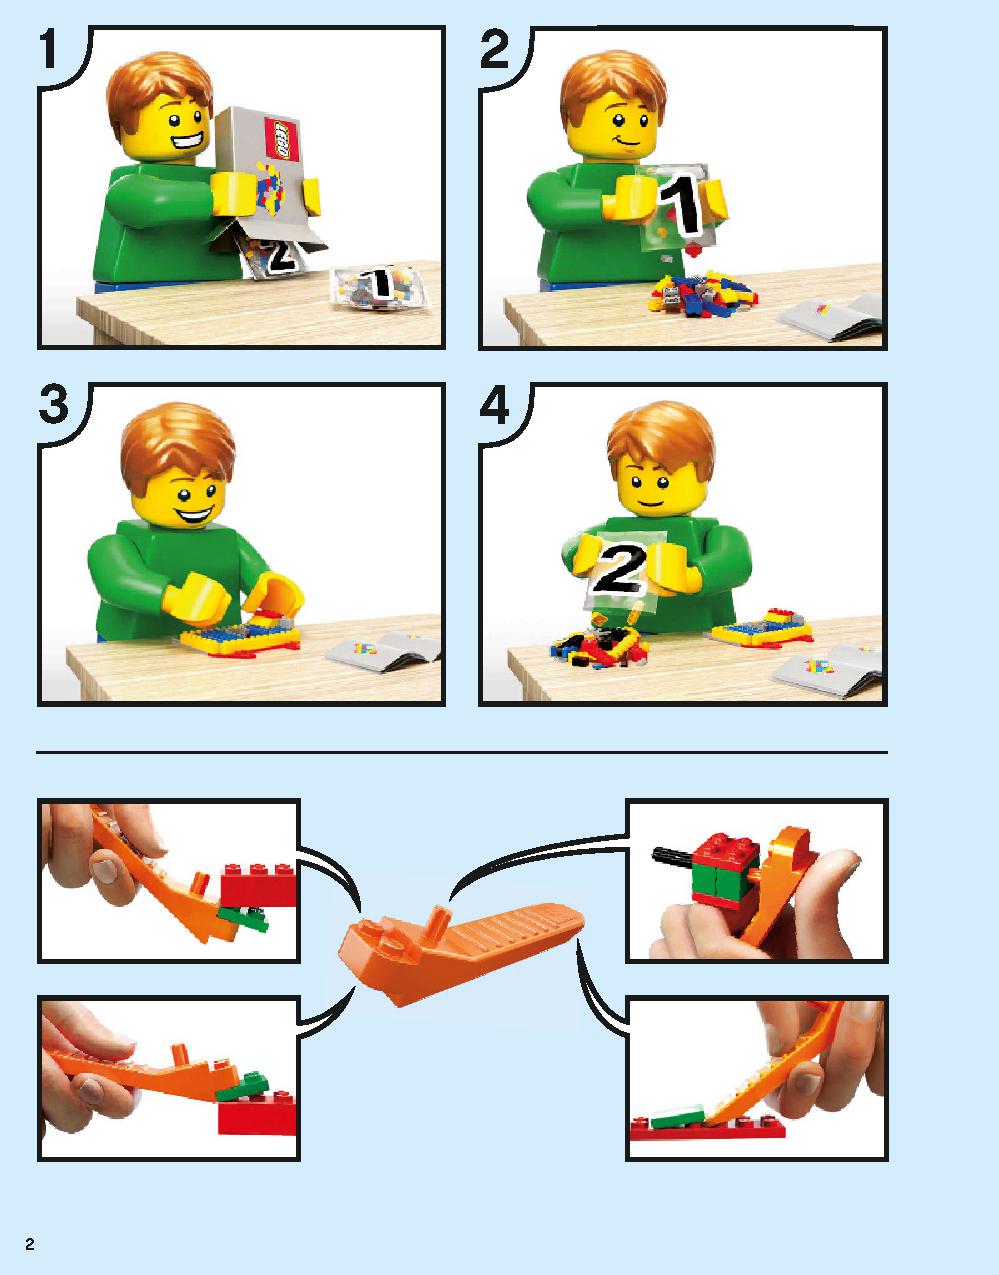 Hogwarts Express 75955 LEGO information LEGO instructions 2 page